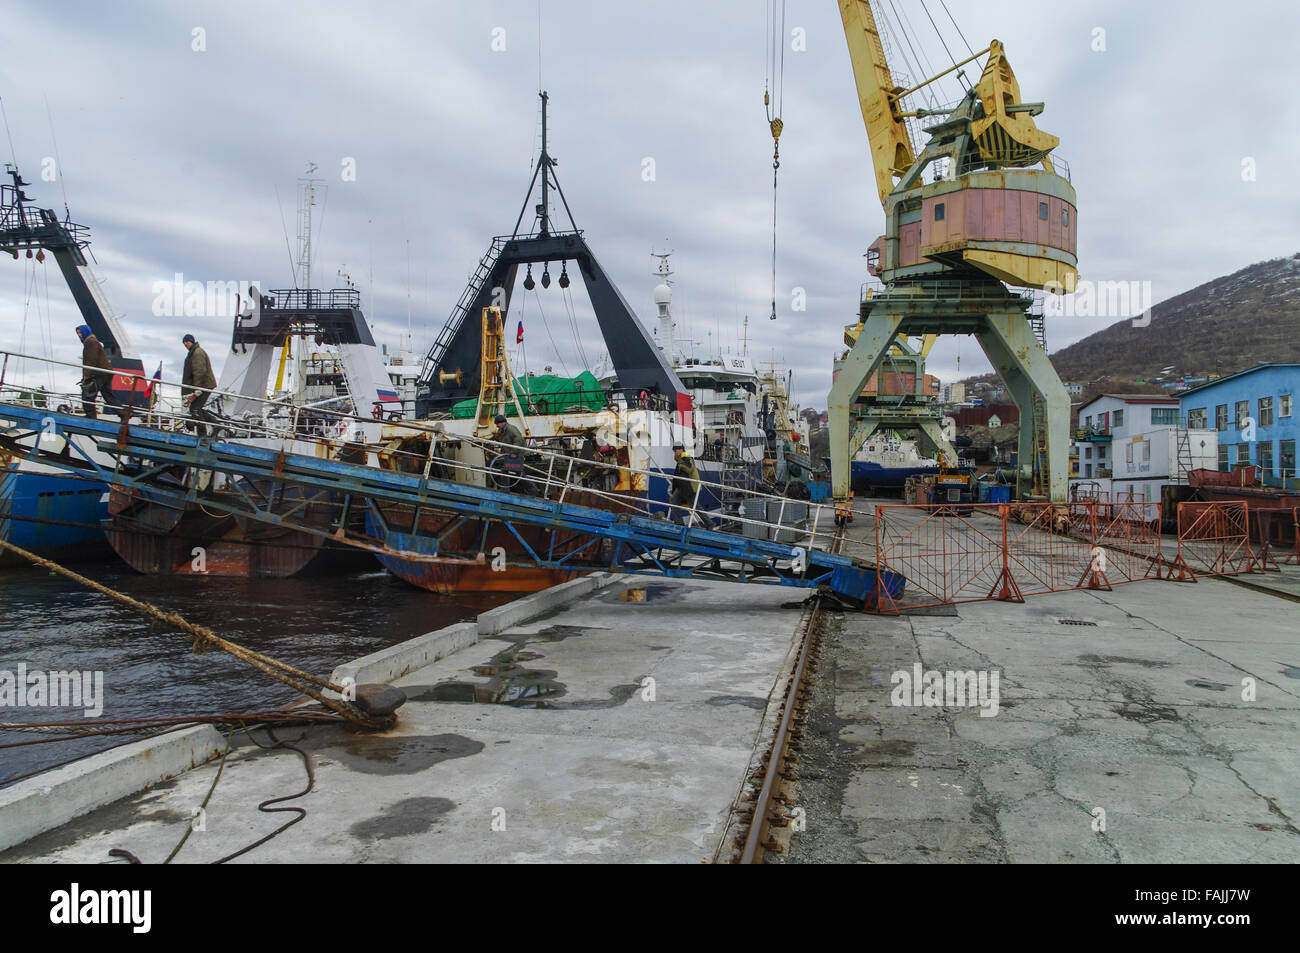 Los arrastreros de pesca de atraque y una antigua grúa en el puerto de Petropavlovsk-Kamchatskiy, Kamchatka, Rusia. Foto de stock